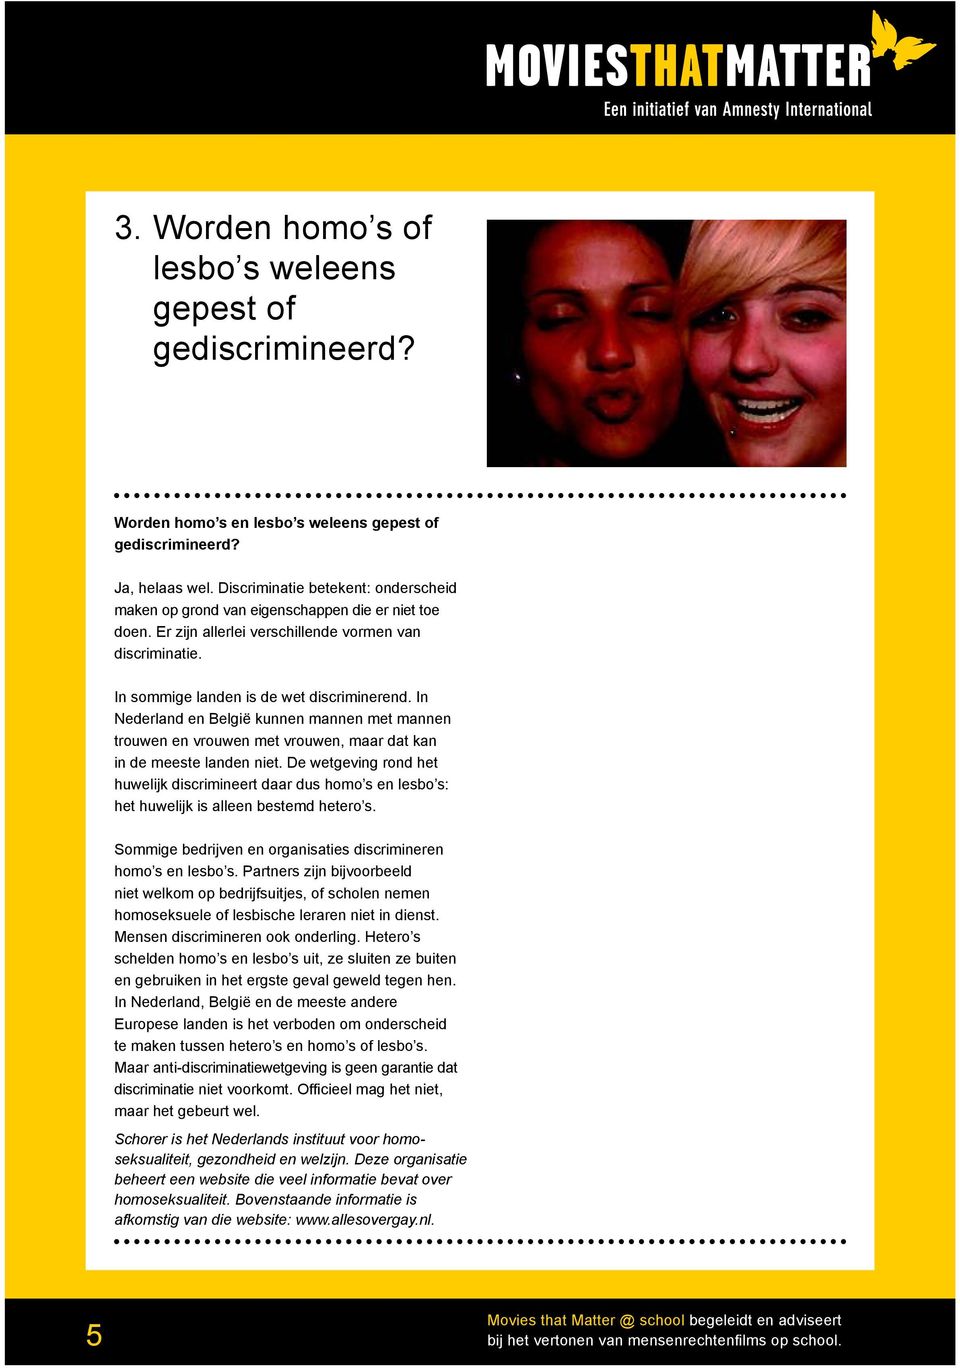 In Nederland en België kunnen mannen met mannen trouwen en vrouwen met vrouwen, maar dat kan in de meeste landen niet.